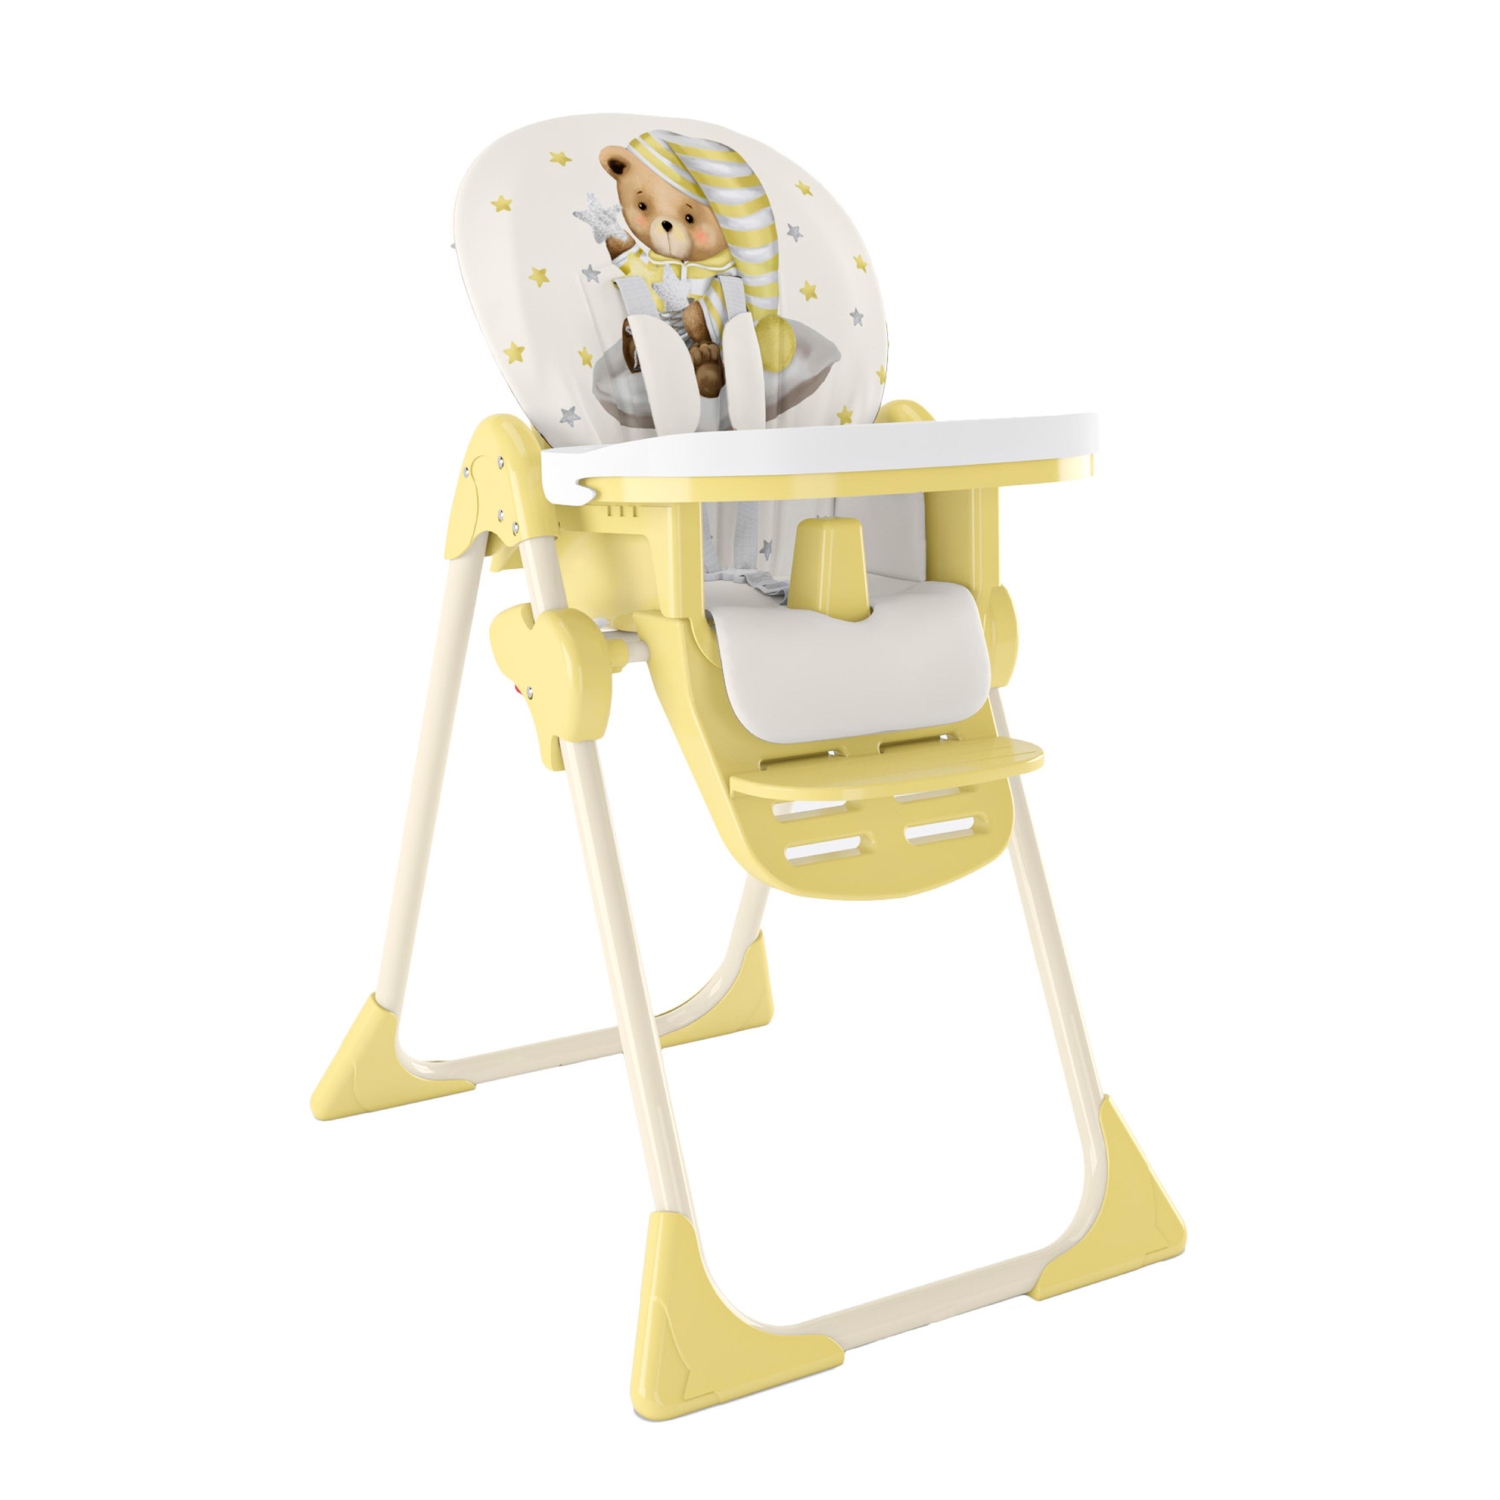 Стульчик для кормления Globex Космик NEW складной желтый стульчик для кормления globex космик люкс